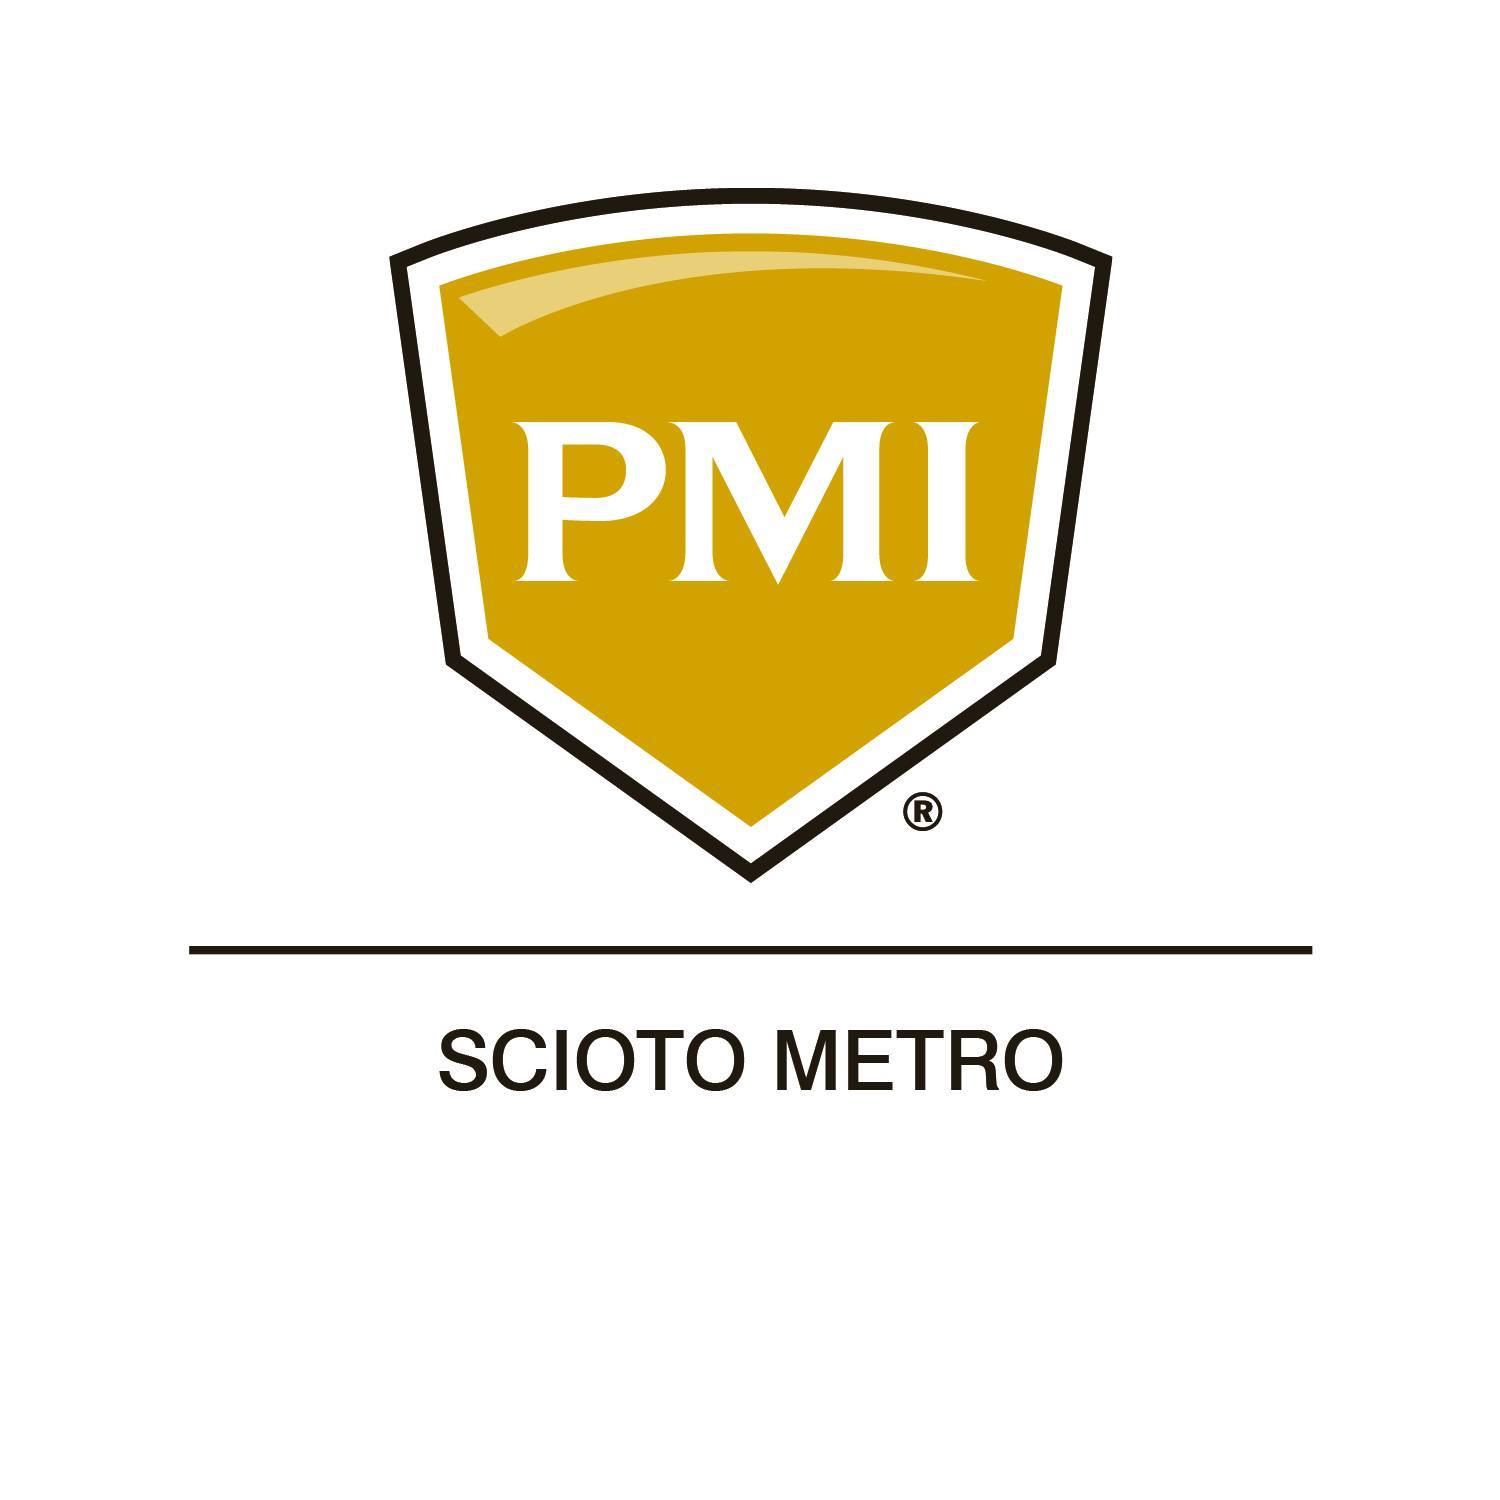 PMI Scioto Metro logo